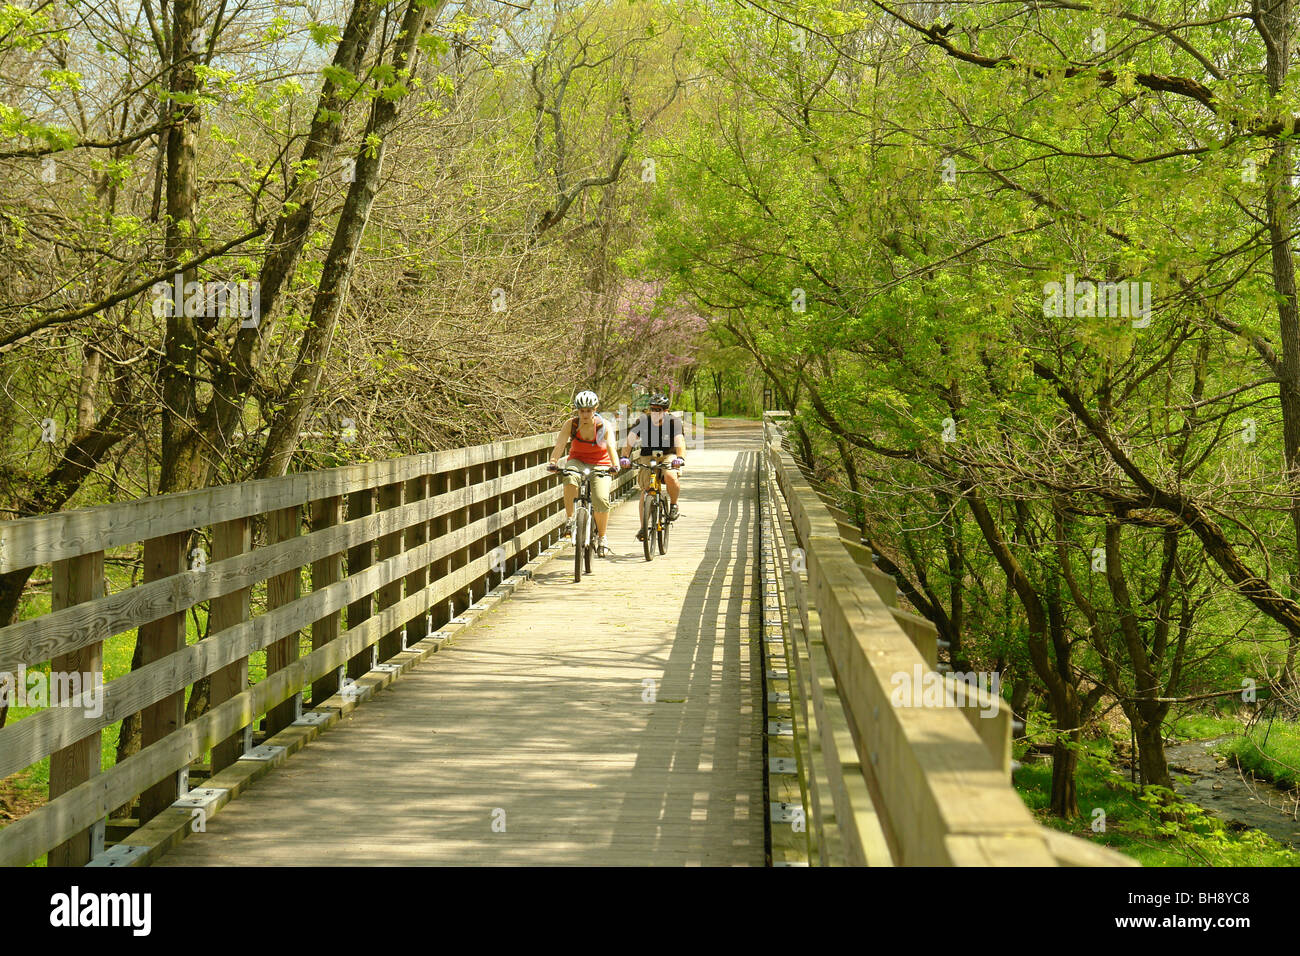 AJD64378, Abingdon, Virginia, Virginia, Virginia reductor pareja Trail, ciclismo, tren, puente de caballetes Foto de stock